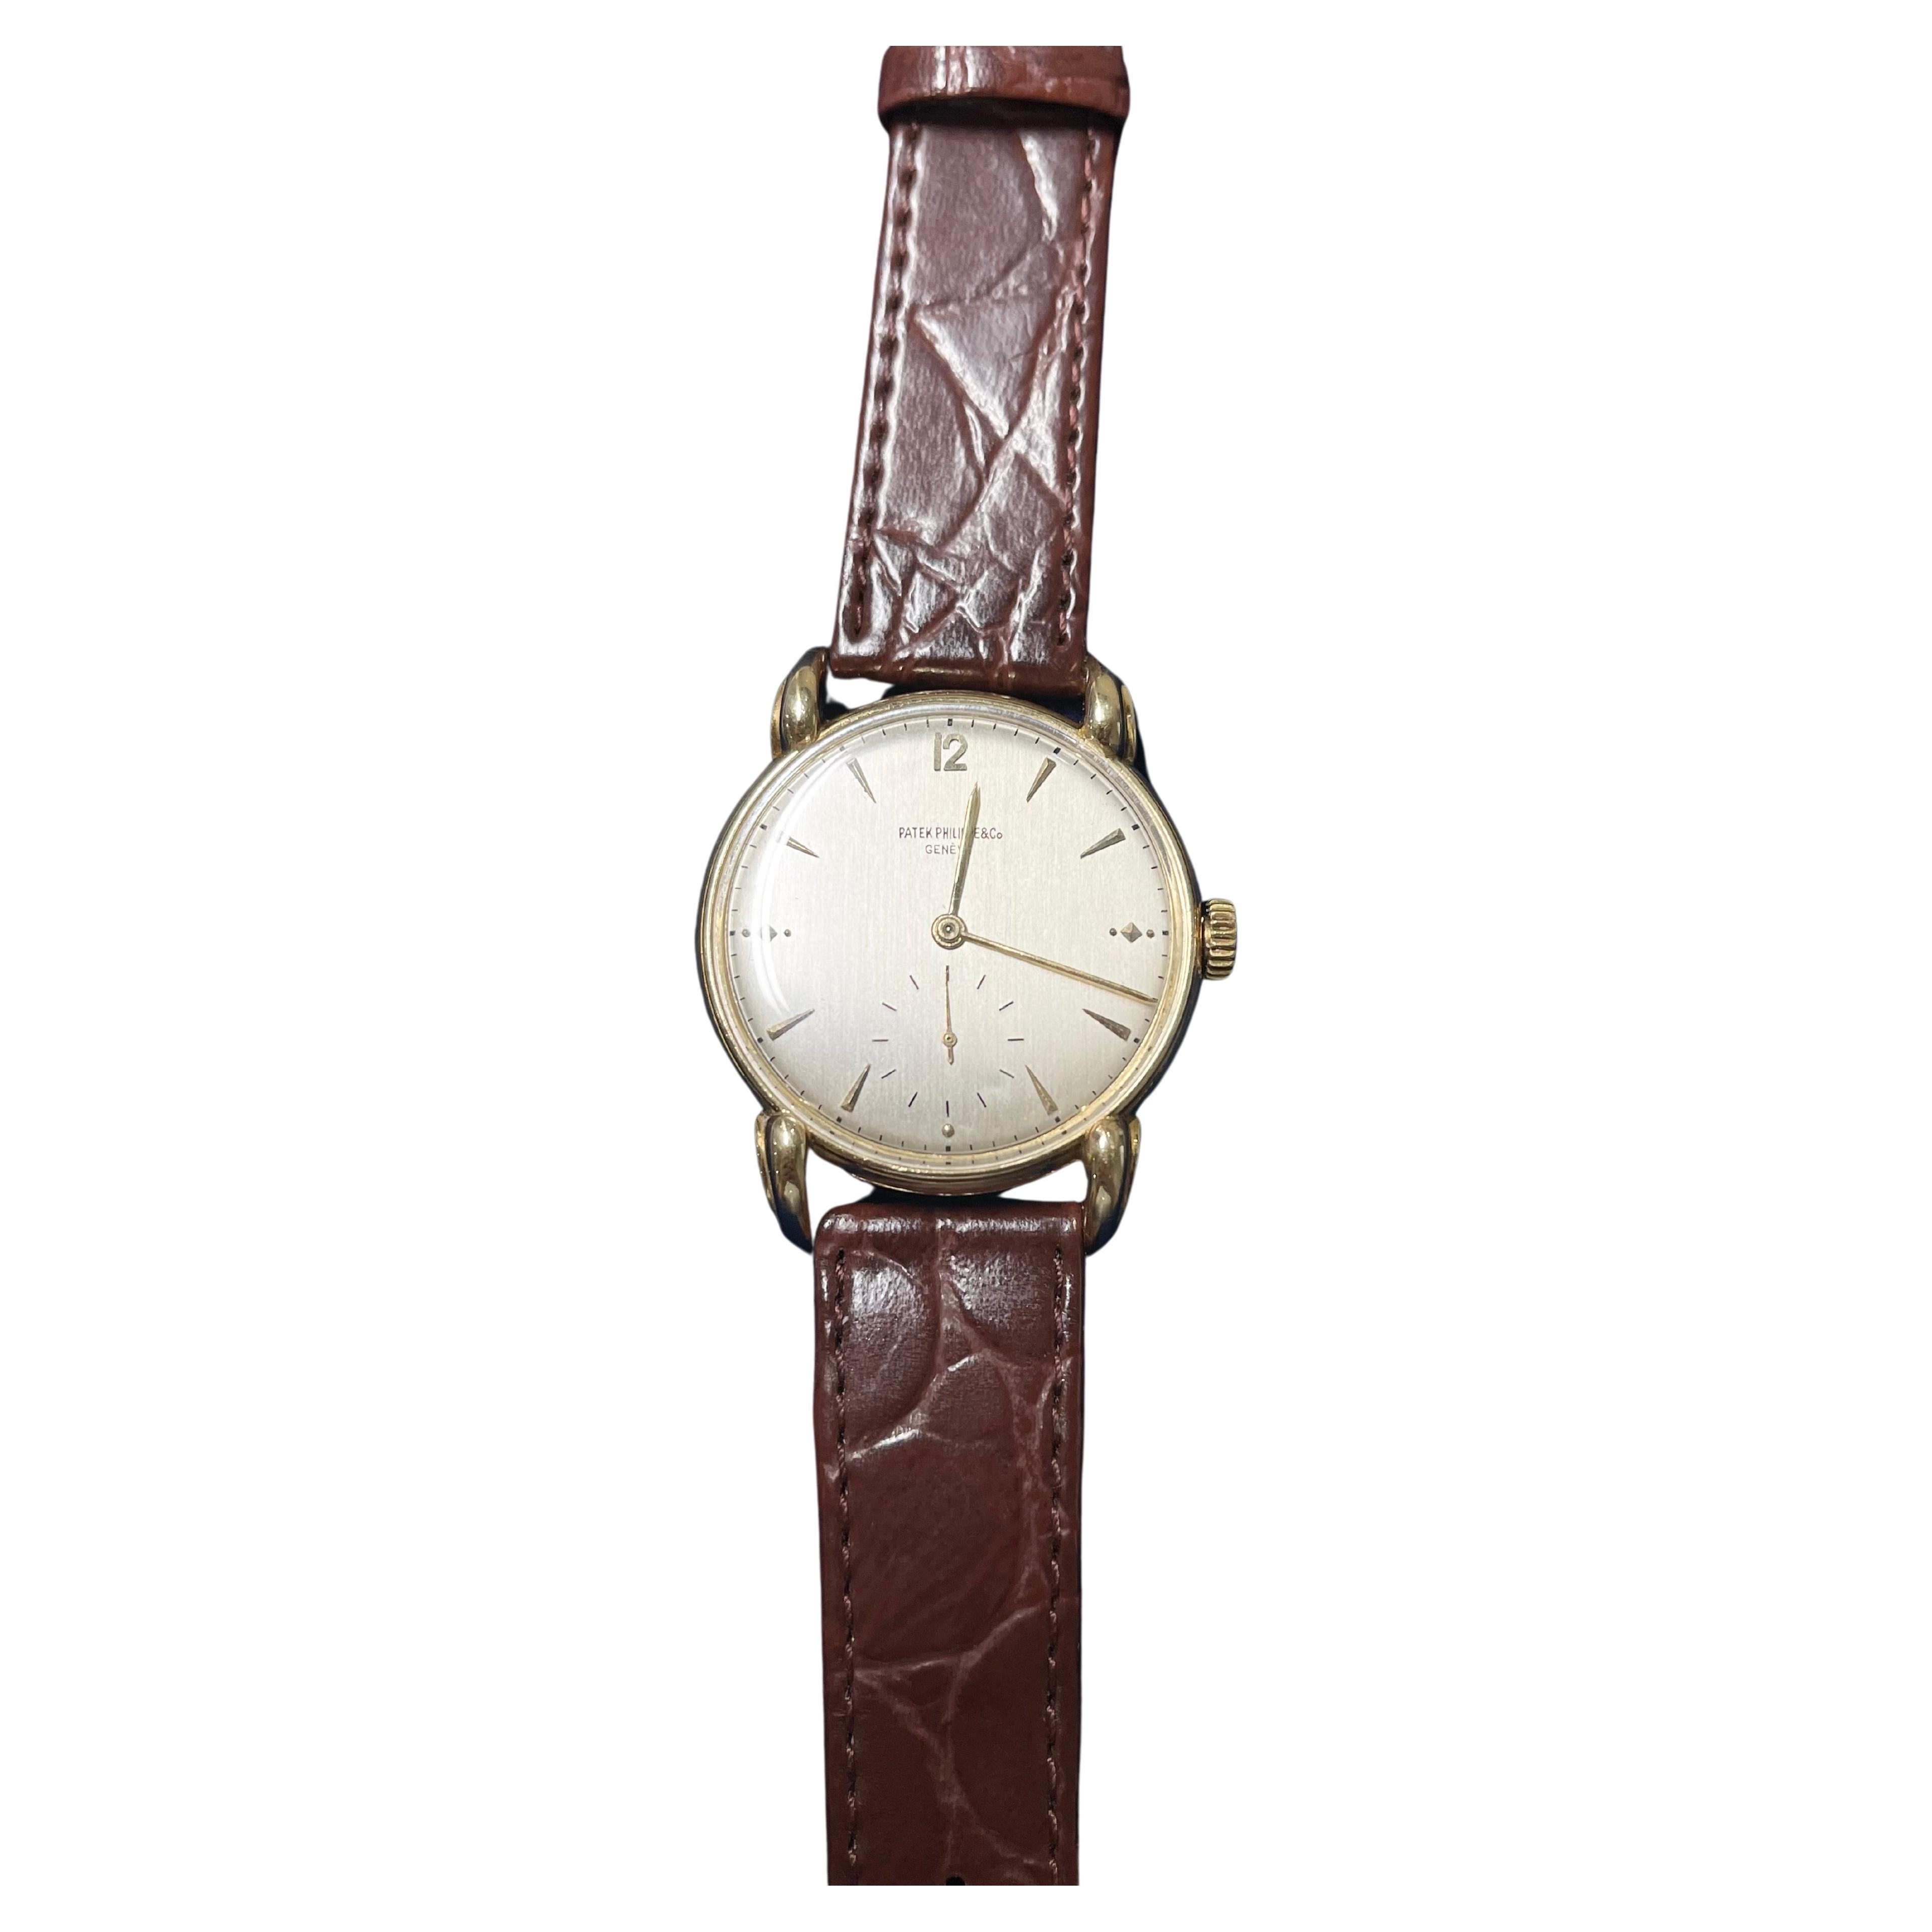 Patek Philippe Handwriting Vintage Watch Ref. 1590 18k YG .750 For Sale